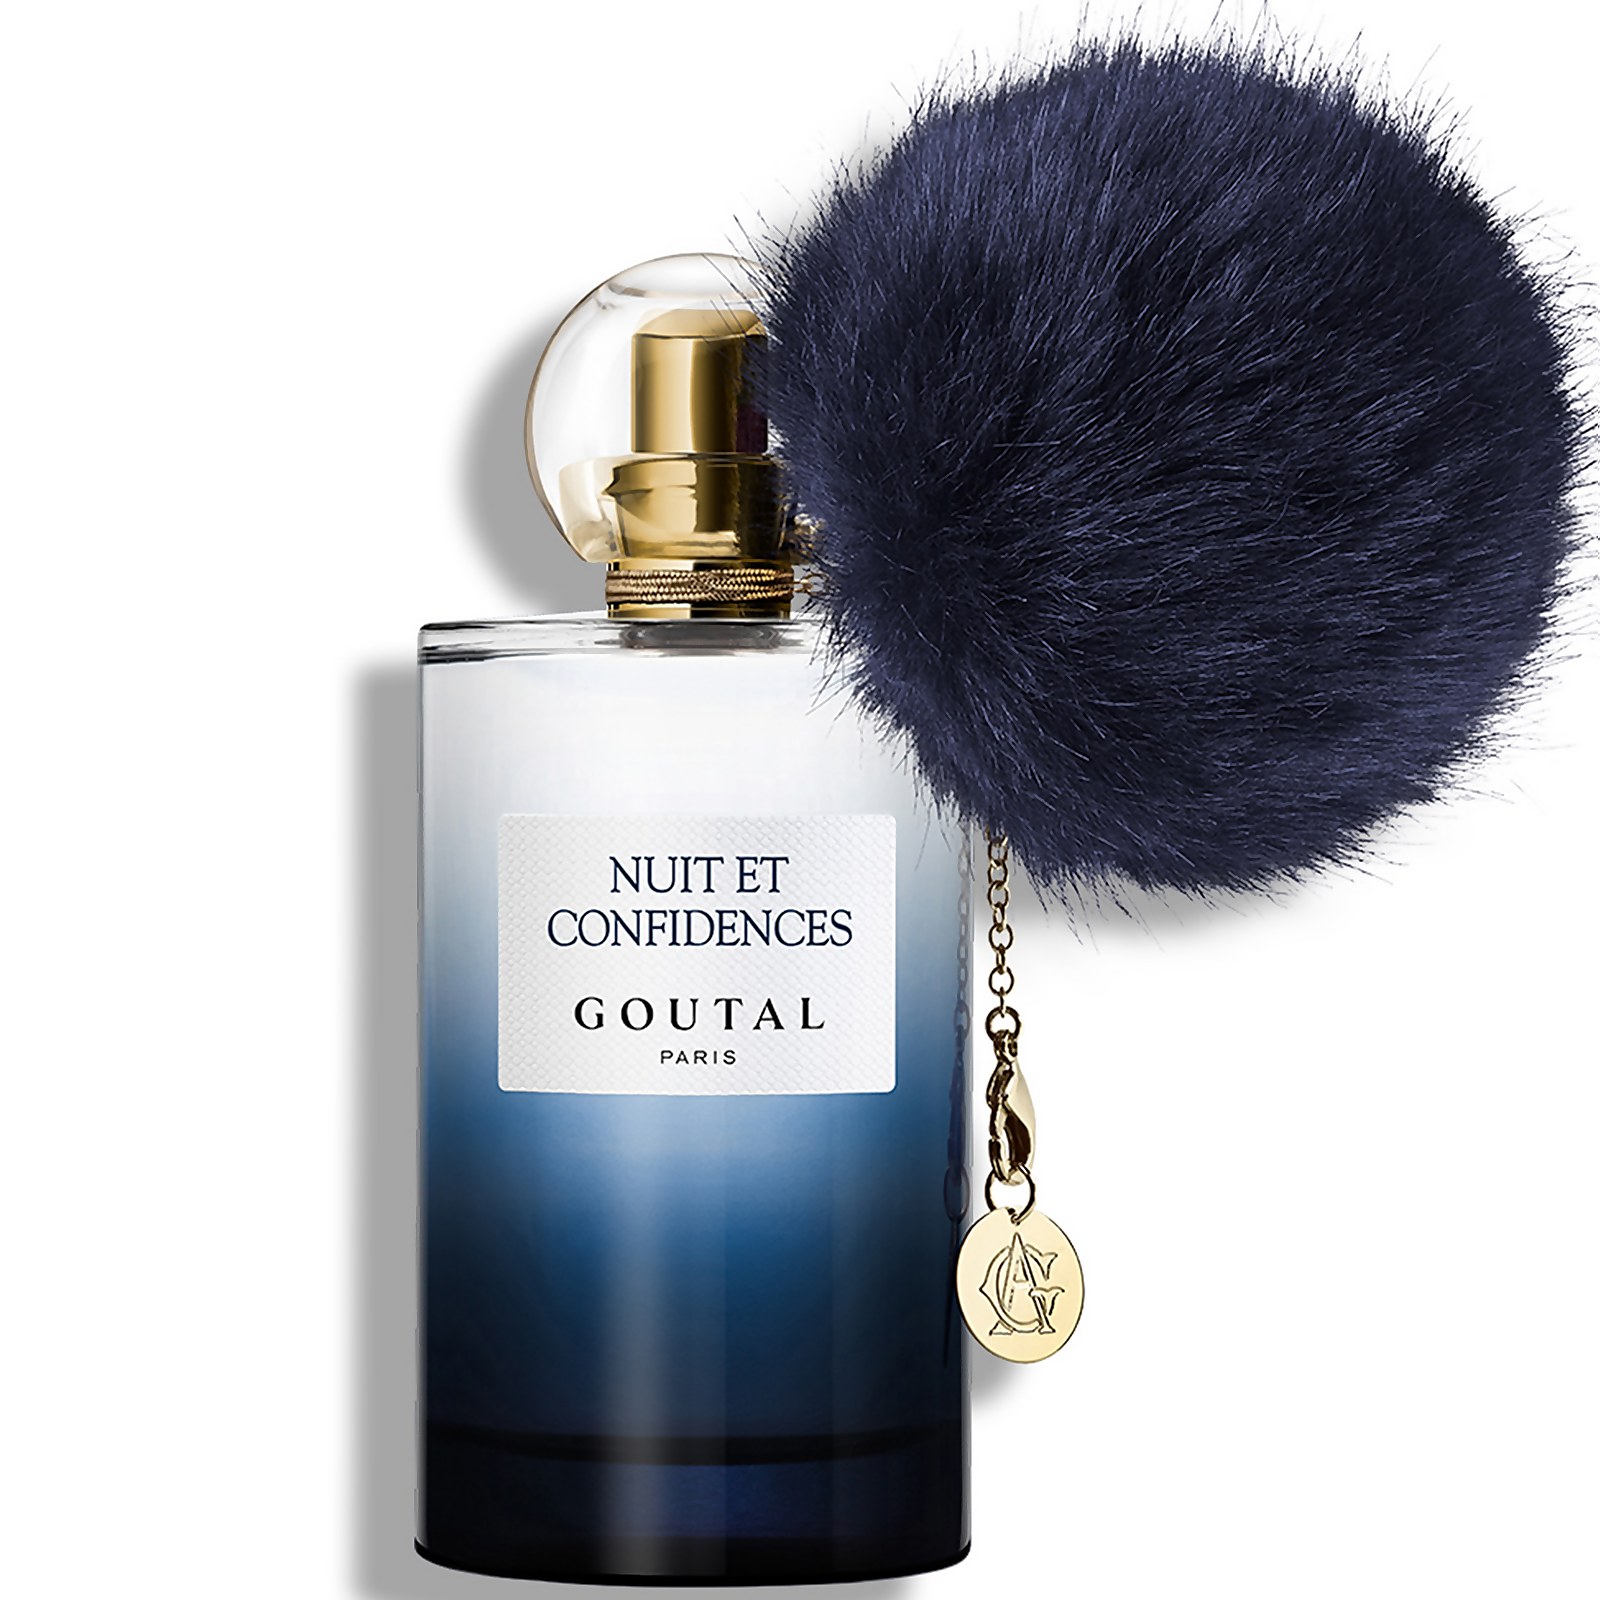 Photos - Women's Fragrance Goutal Paris Goutal Nuit et Confidences Eau de Parfum - 100ml AG220110582 